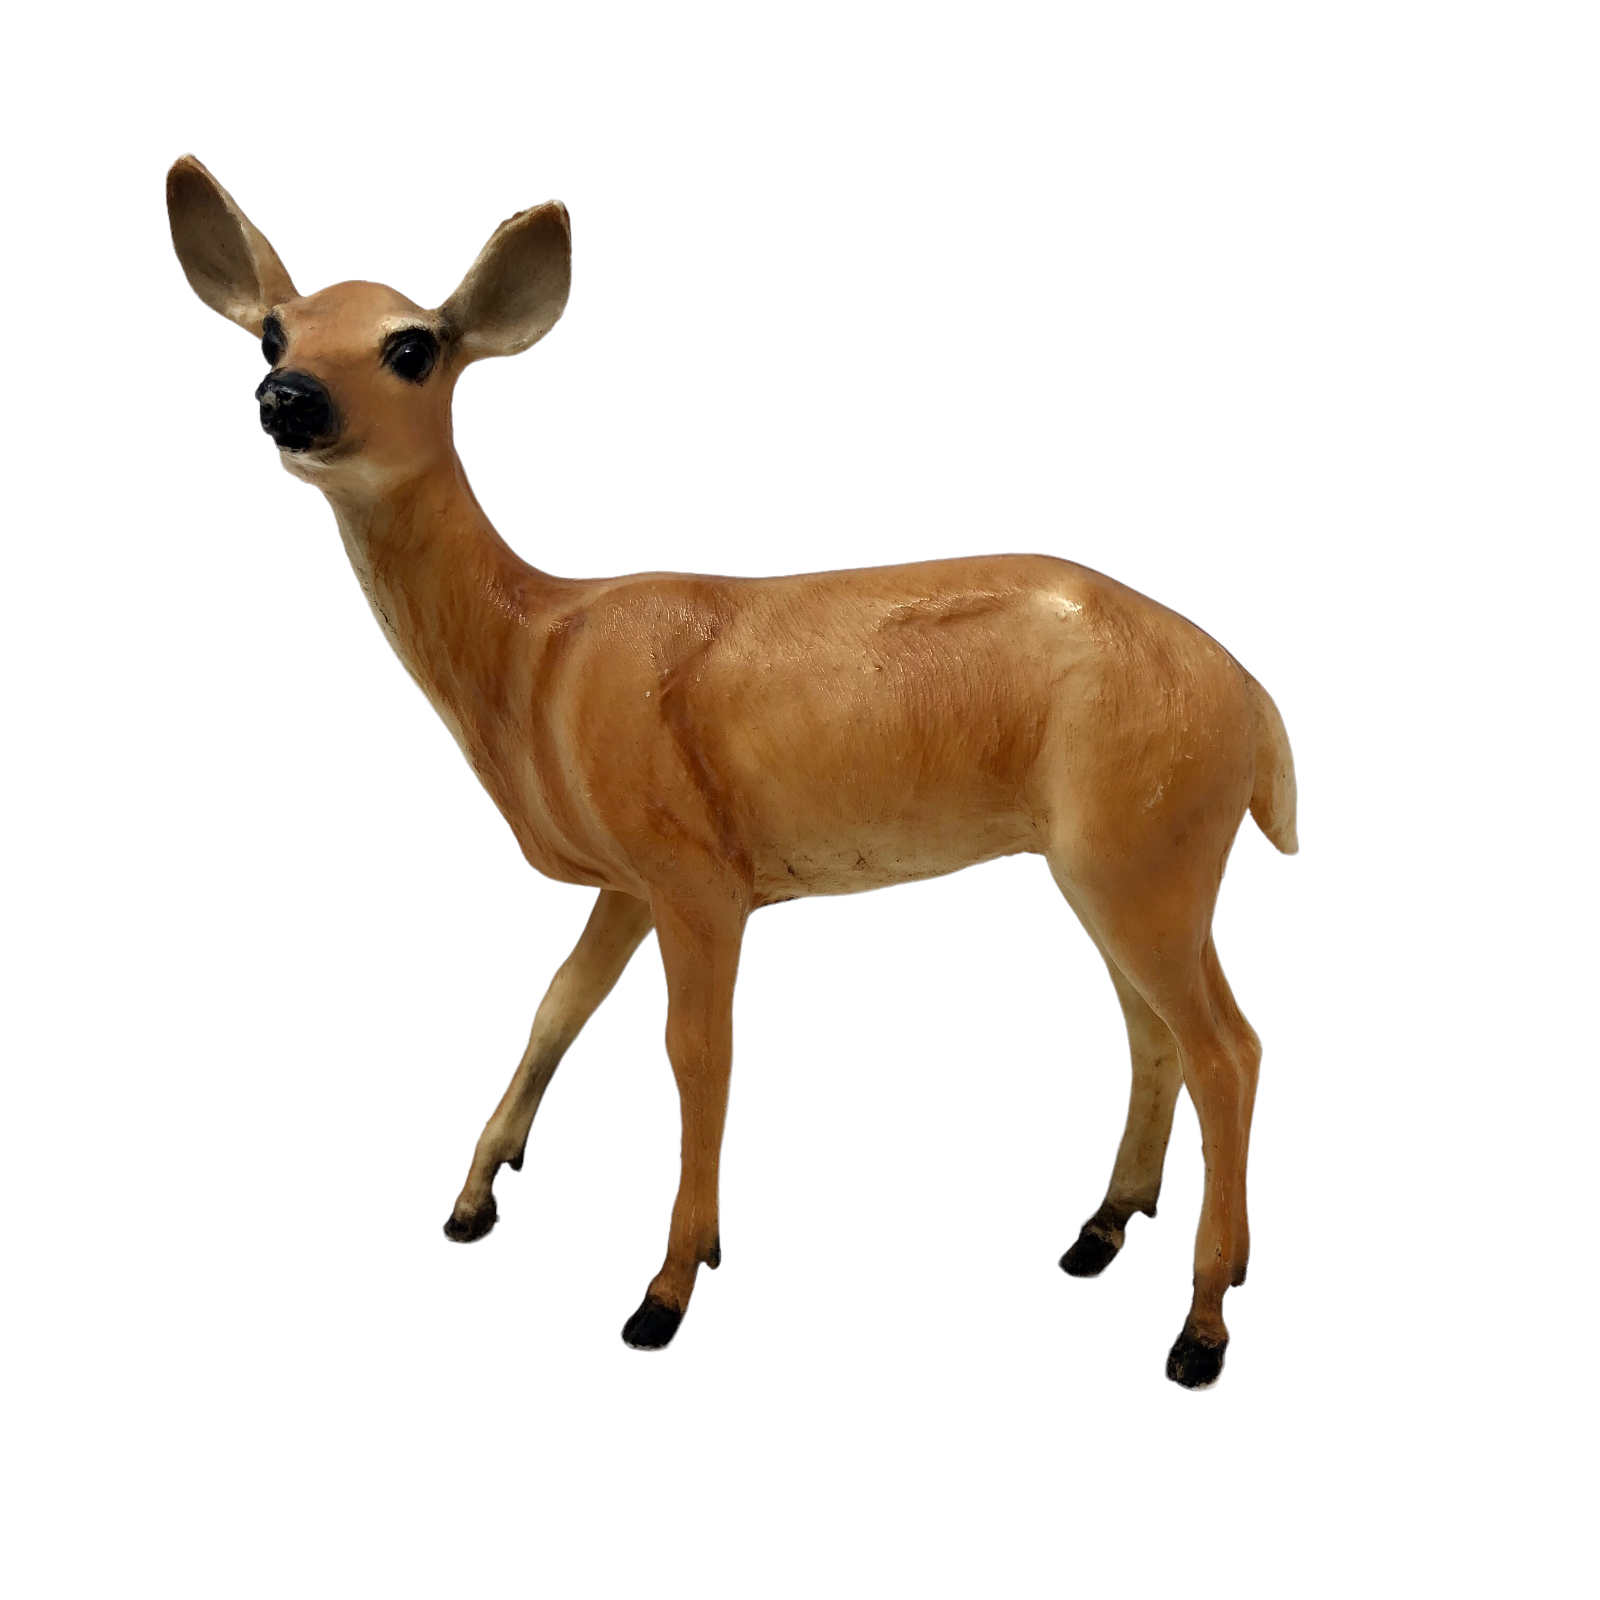 Primary image for VTG Breyer Doe # 32 Whitetail Deer Figurine White Underside Black Muzzle